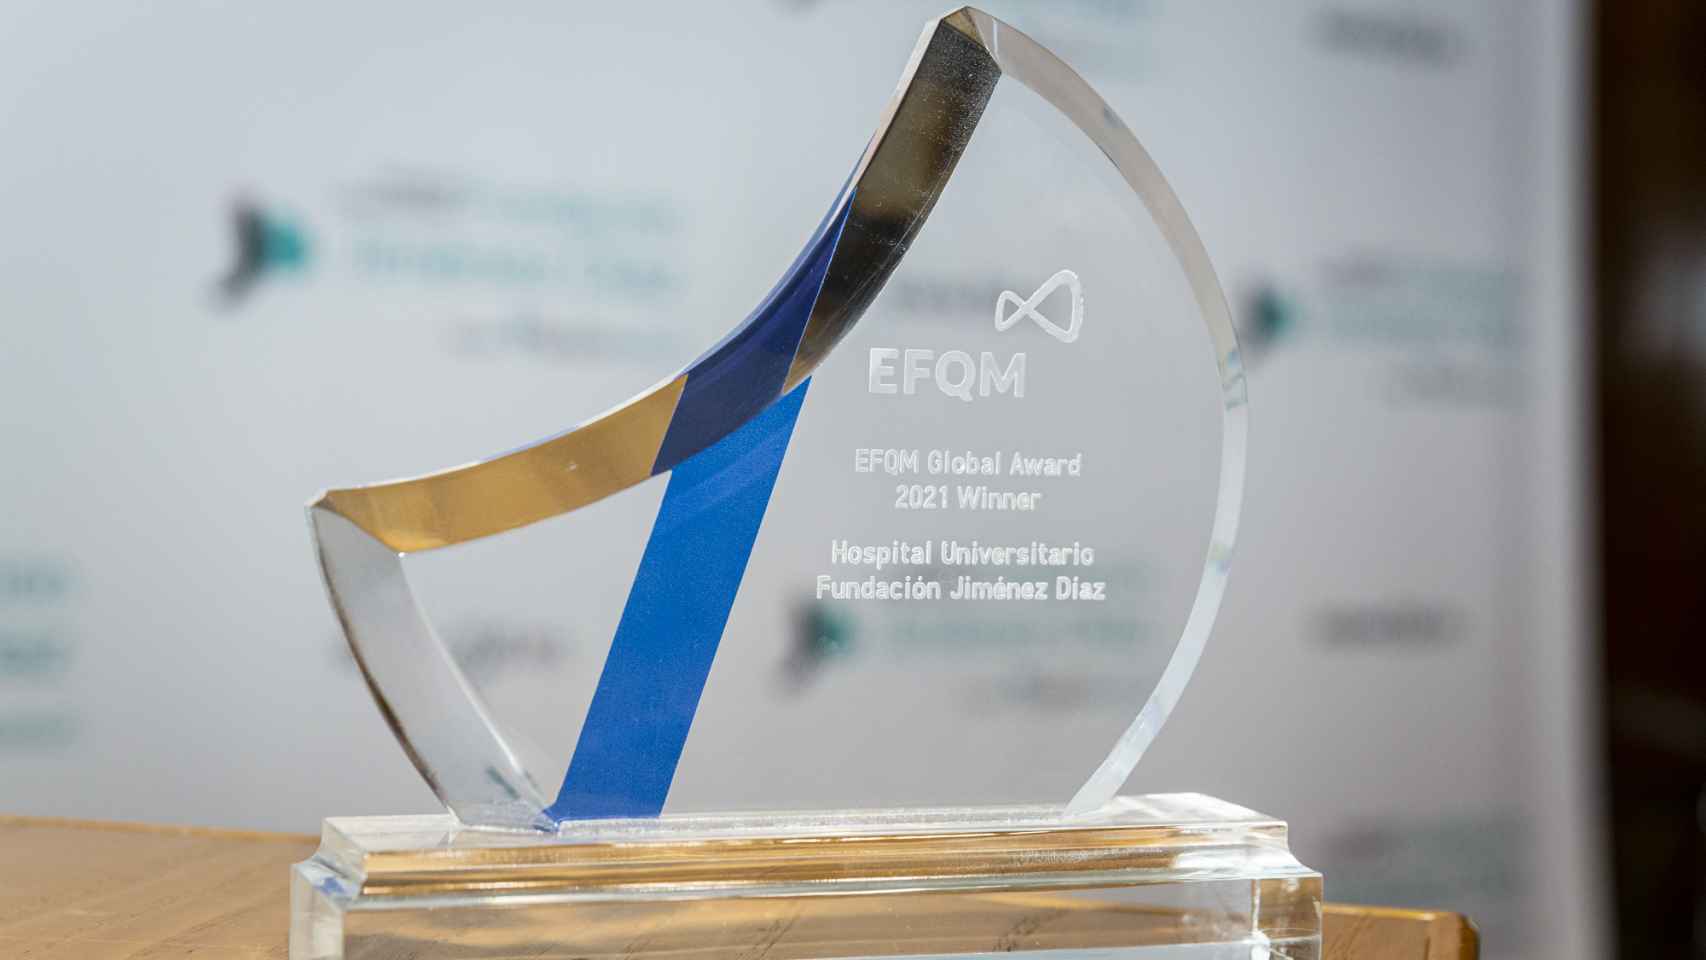 El EFQM es el premio a la excelencia en gestión de mayor prestigio internacional.